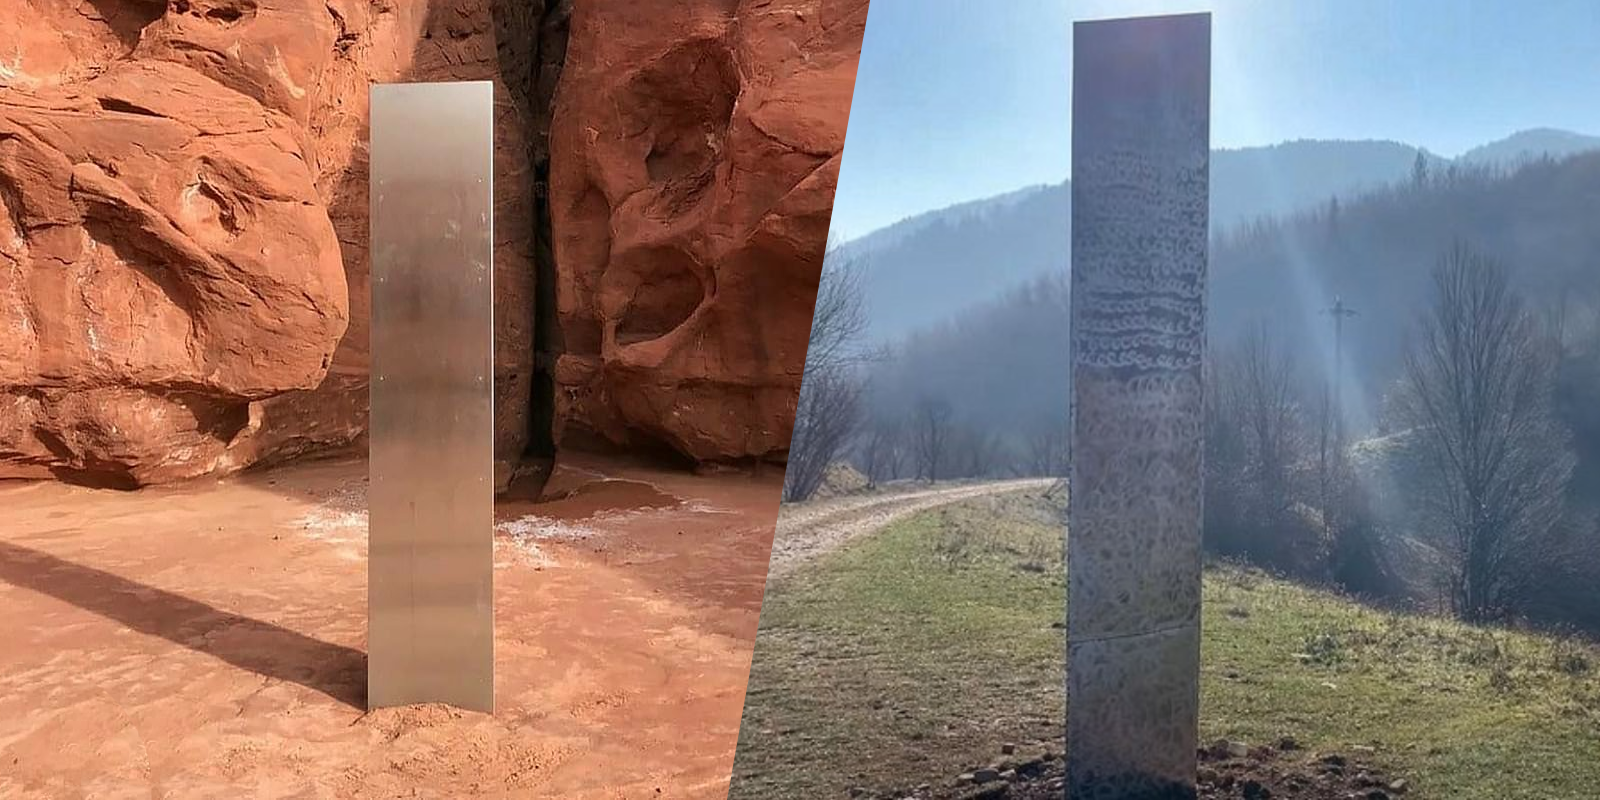 Les monolithes de l'Utah et de Roumanie. © DPS News Utah, Ziar Piatra Neamt